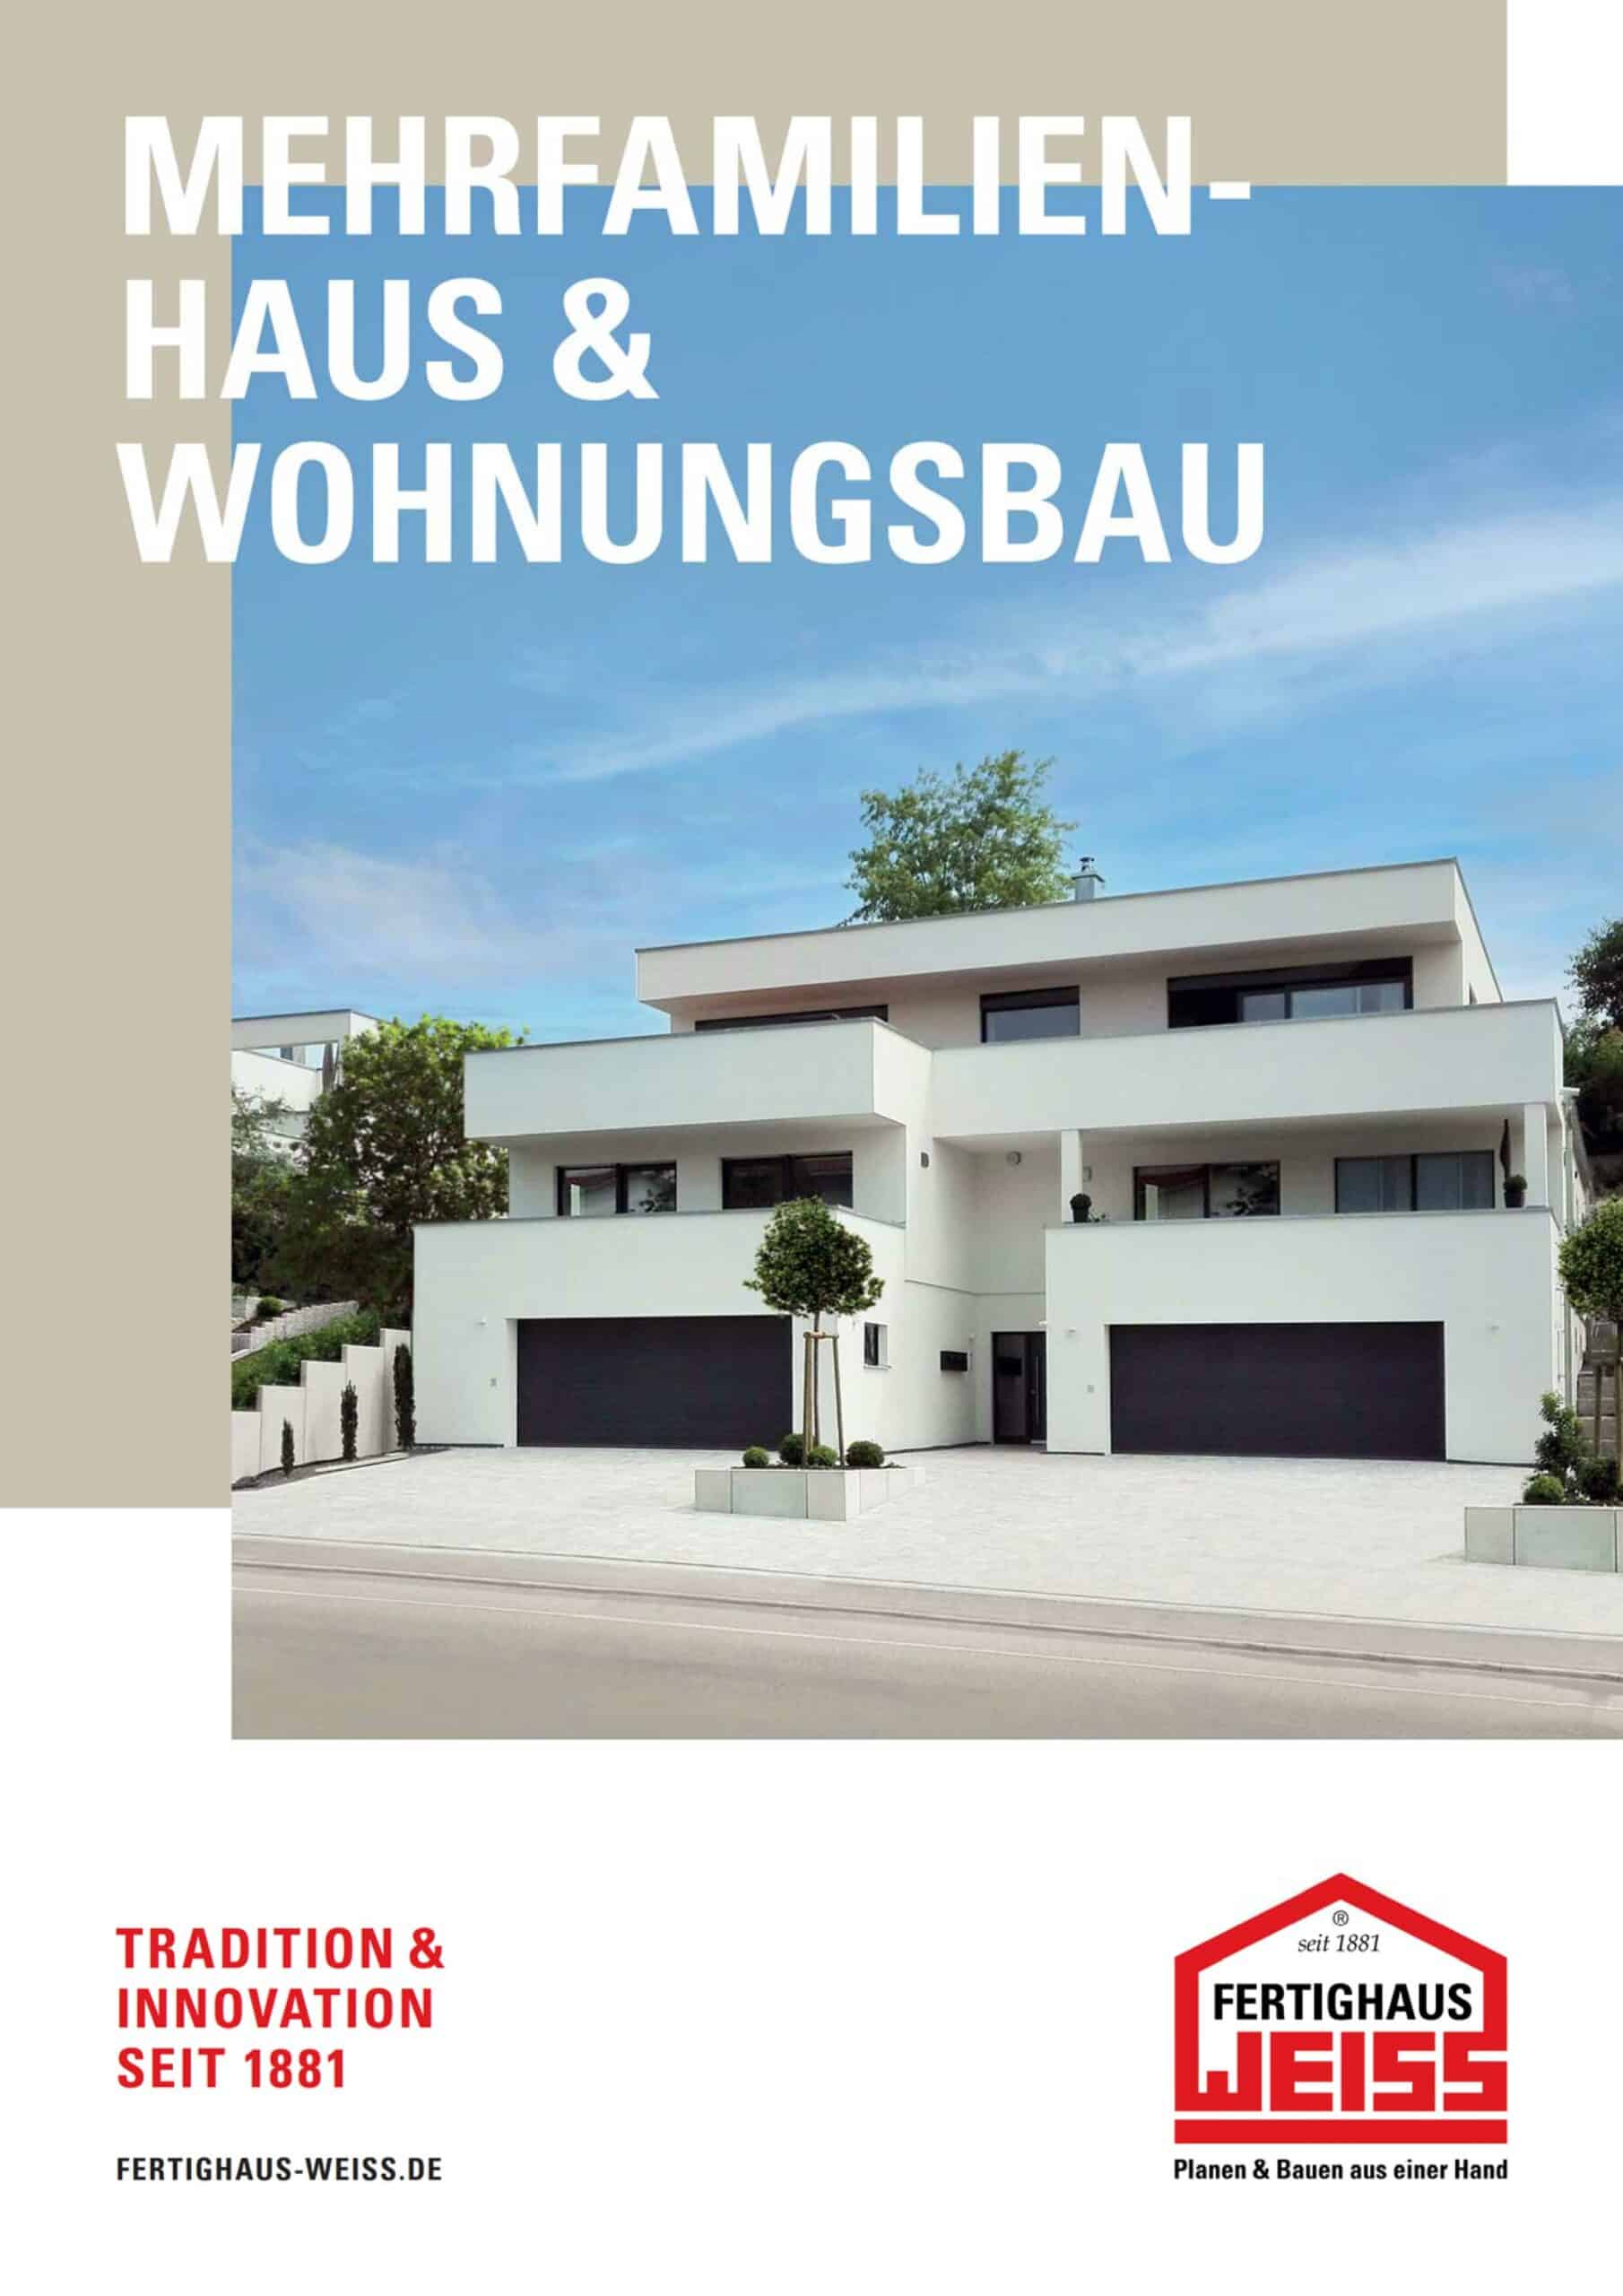 Fertighaus-WEISS-Wohnungsbau-undMehrgeschoss